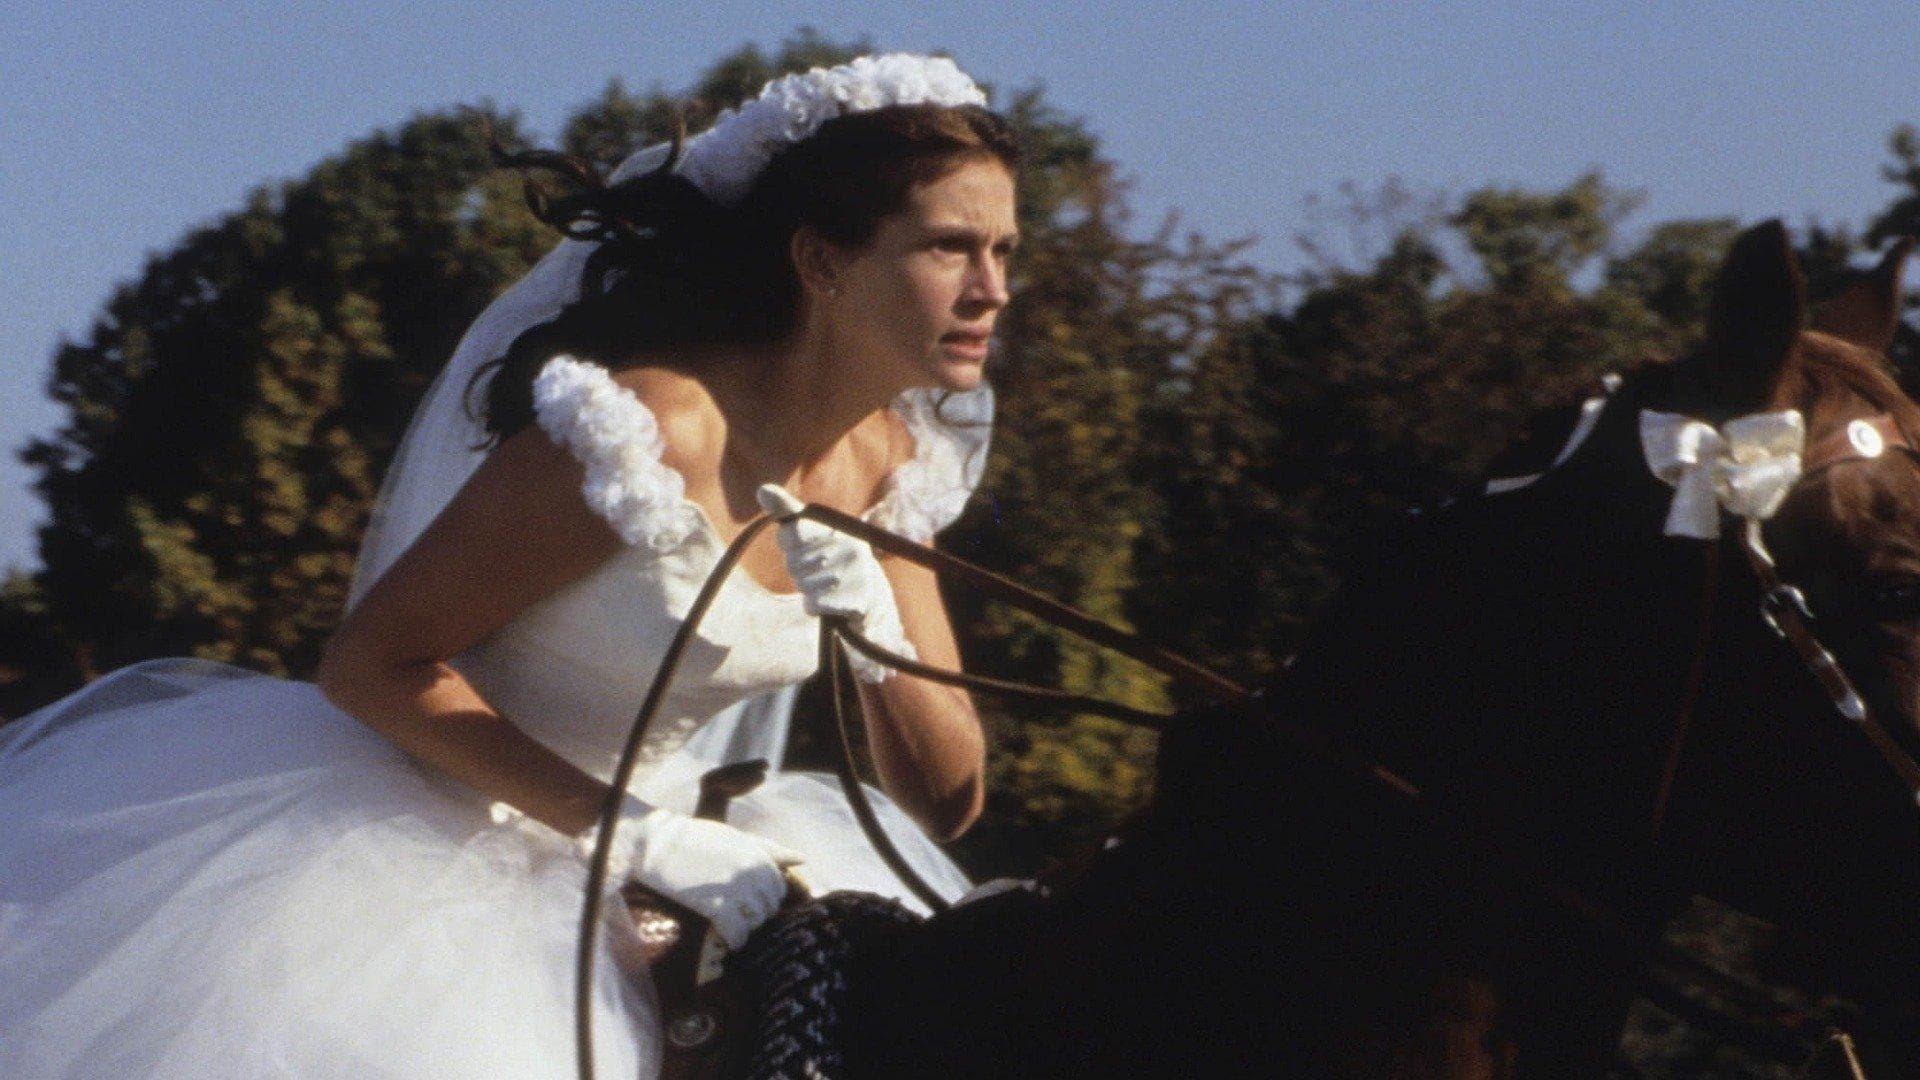 Сбежавшая невеста (1999)